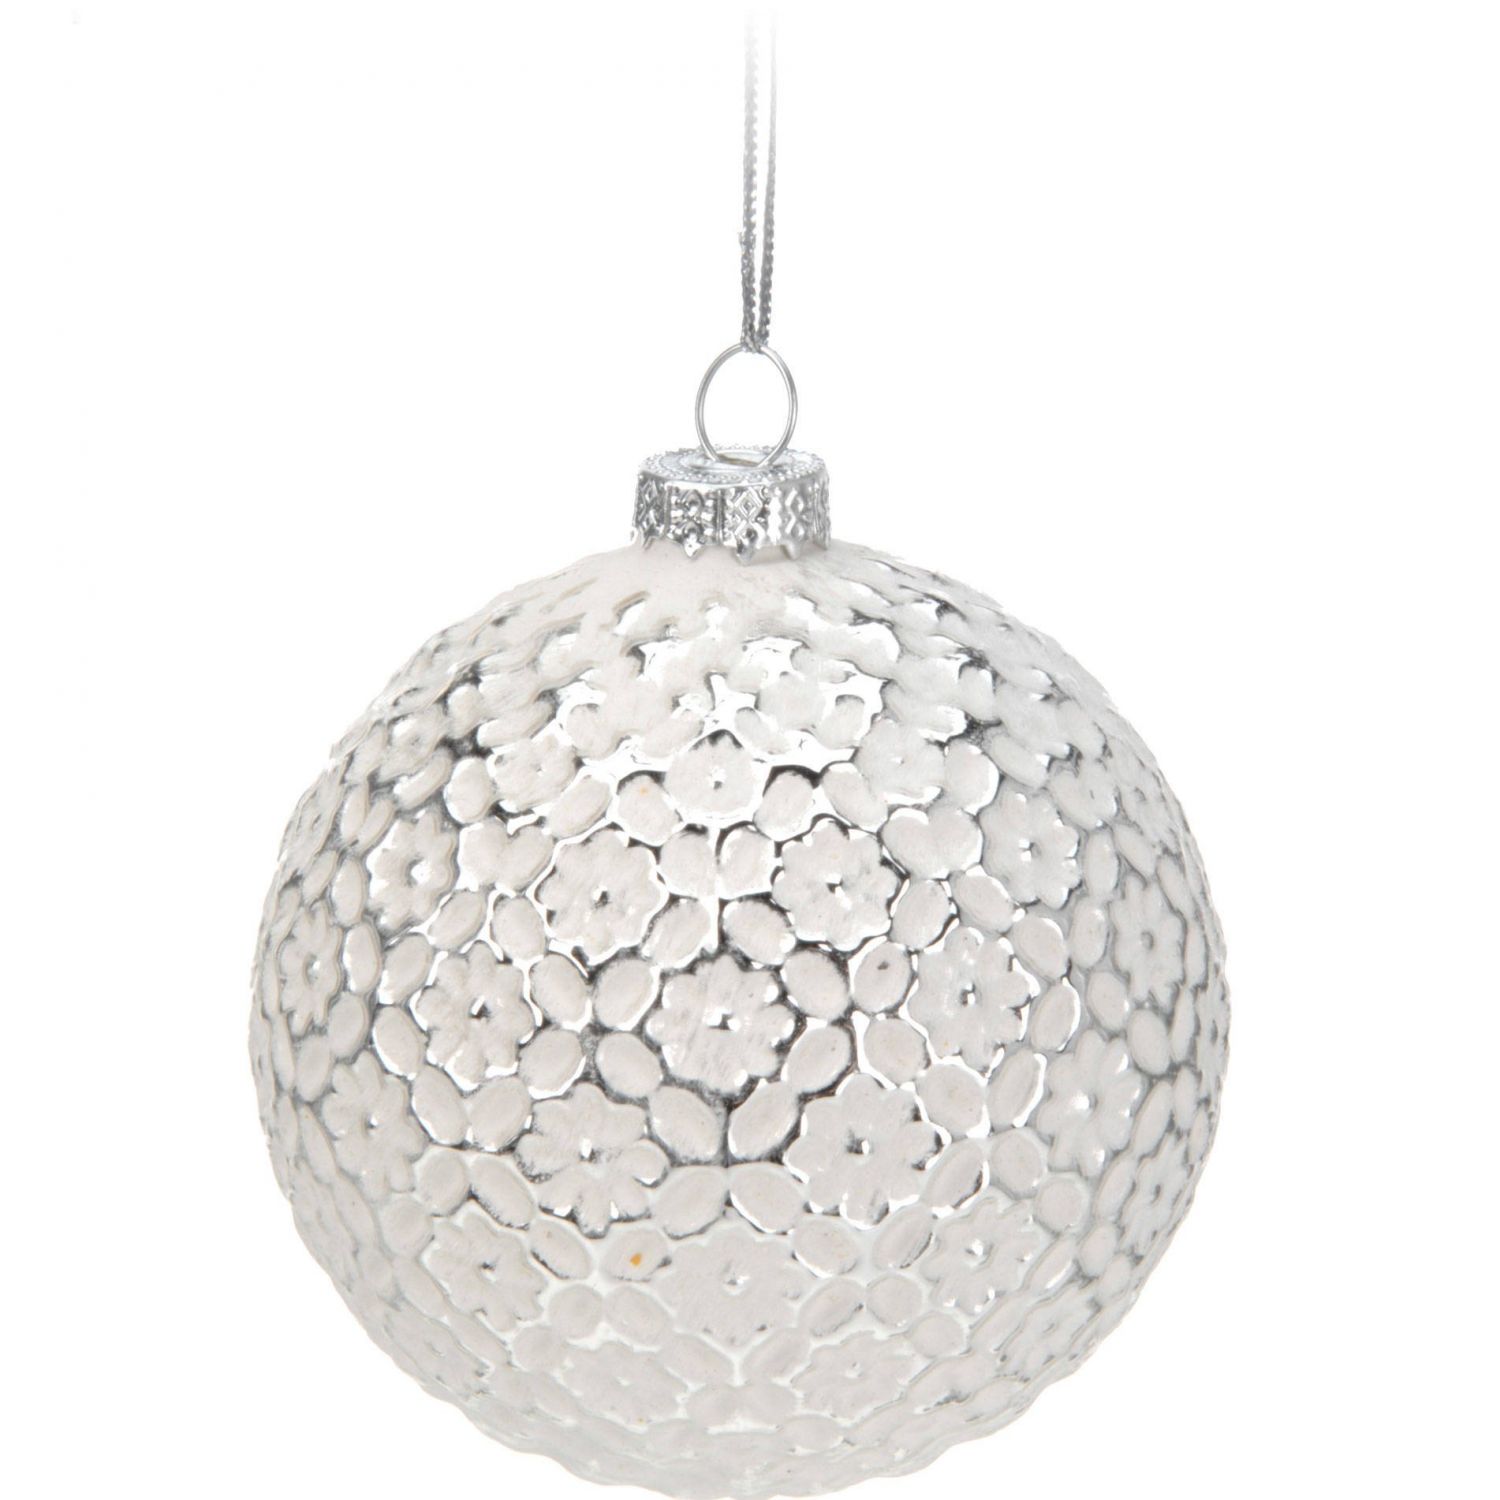 Home Styling Collection Vánoční koule, O 6 cm, bílá se stříbrným vzorem - EMAKO.CZ s.r.o.